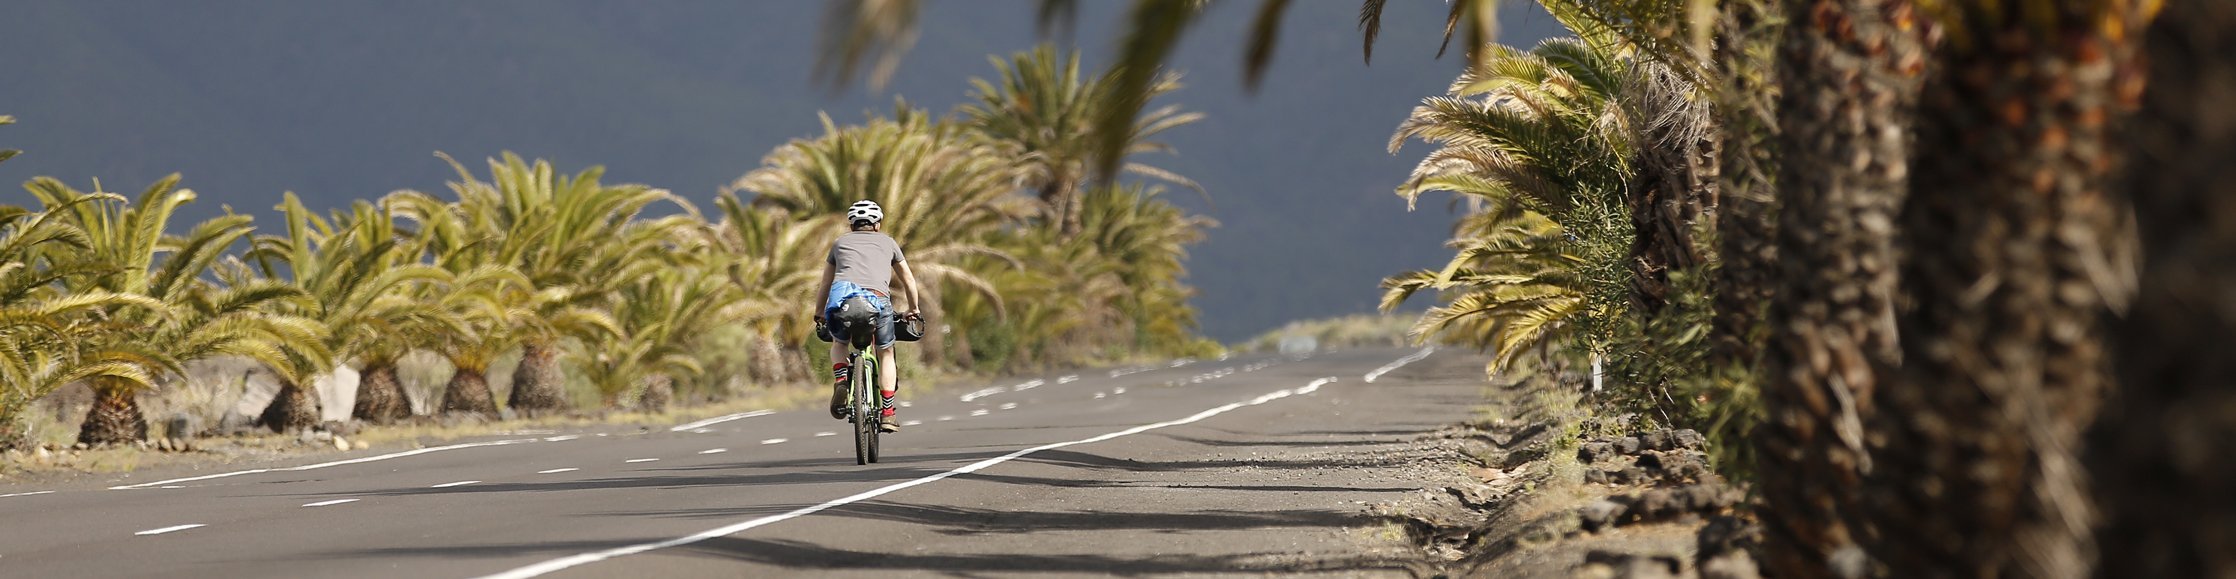 Salsa Fahrräder - Radfahrer fährt auf langer Straße unter Palmen